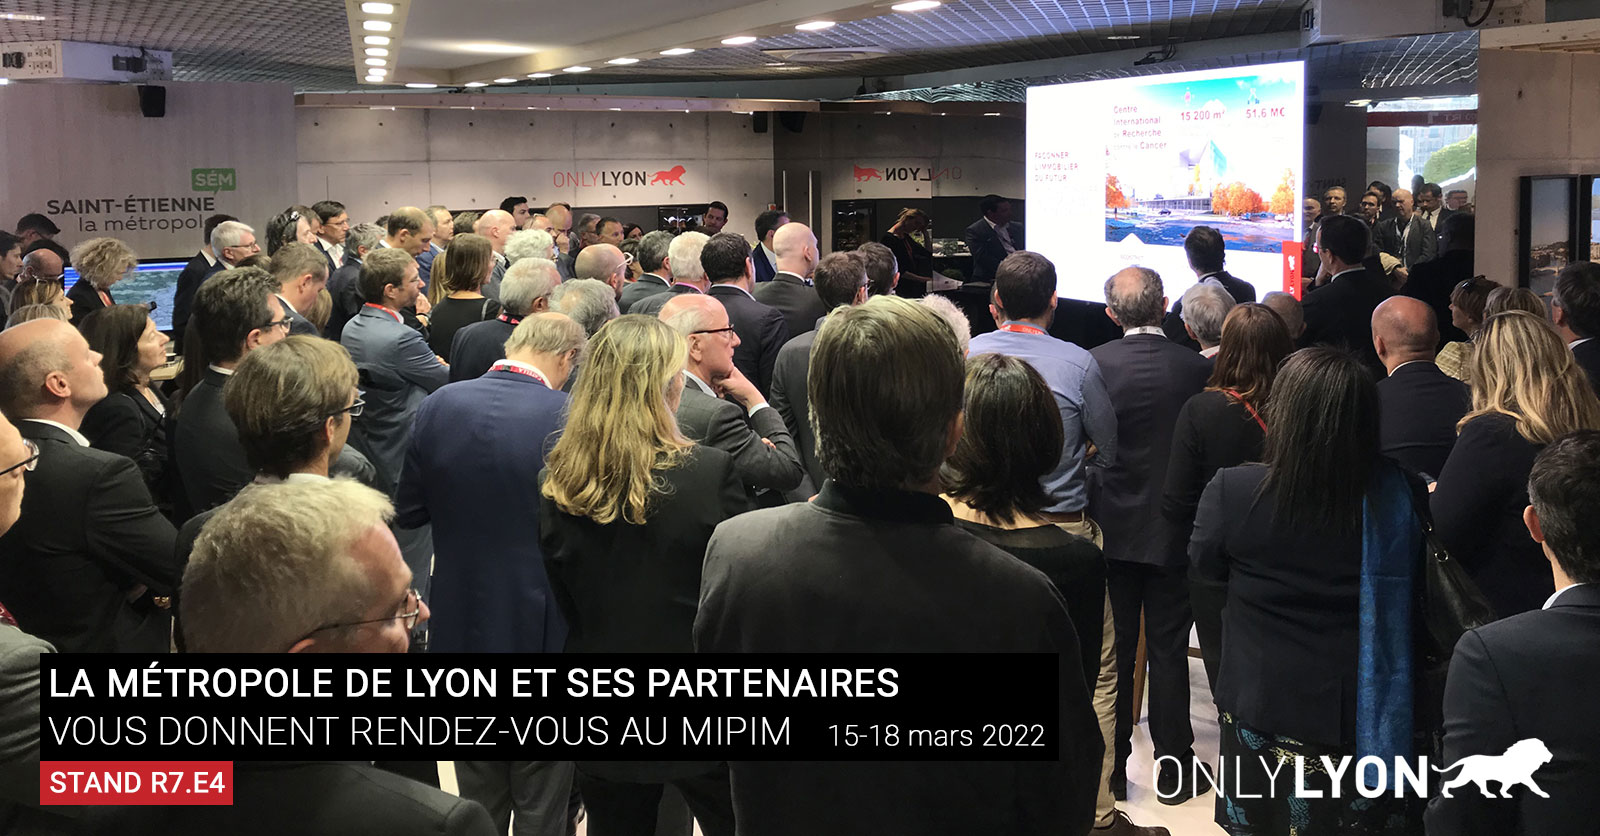 Lyon au Mipim du 15 au 18 mars 2022 au Palais des festivals de Cannes, stand R7.E4 ONLYLYON